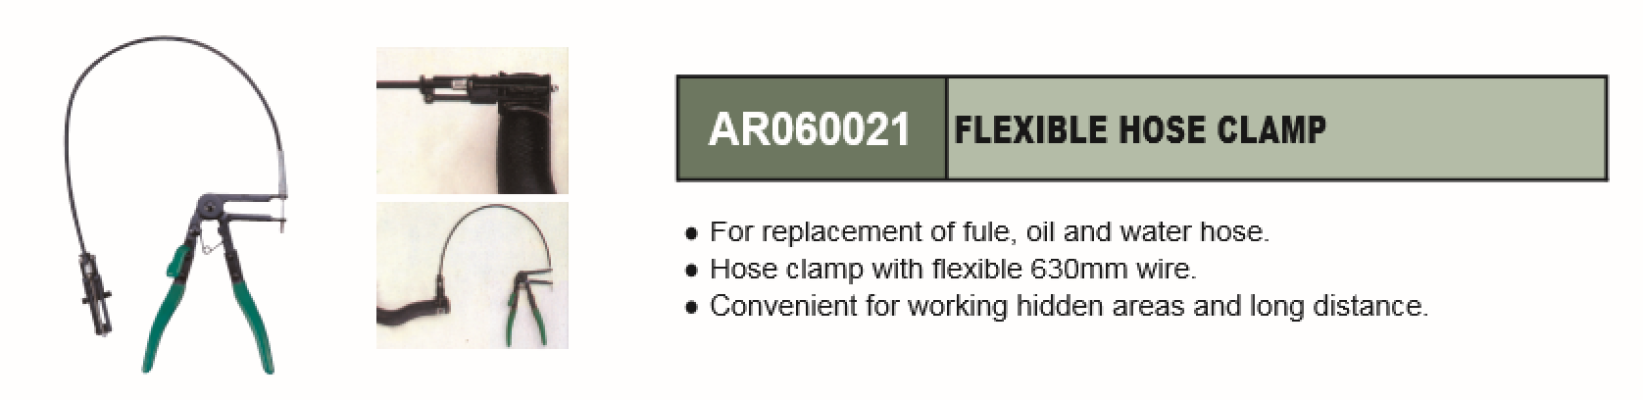 FLEXIBLE HOSE CLAMP - AR060021